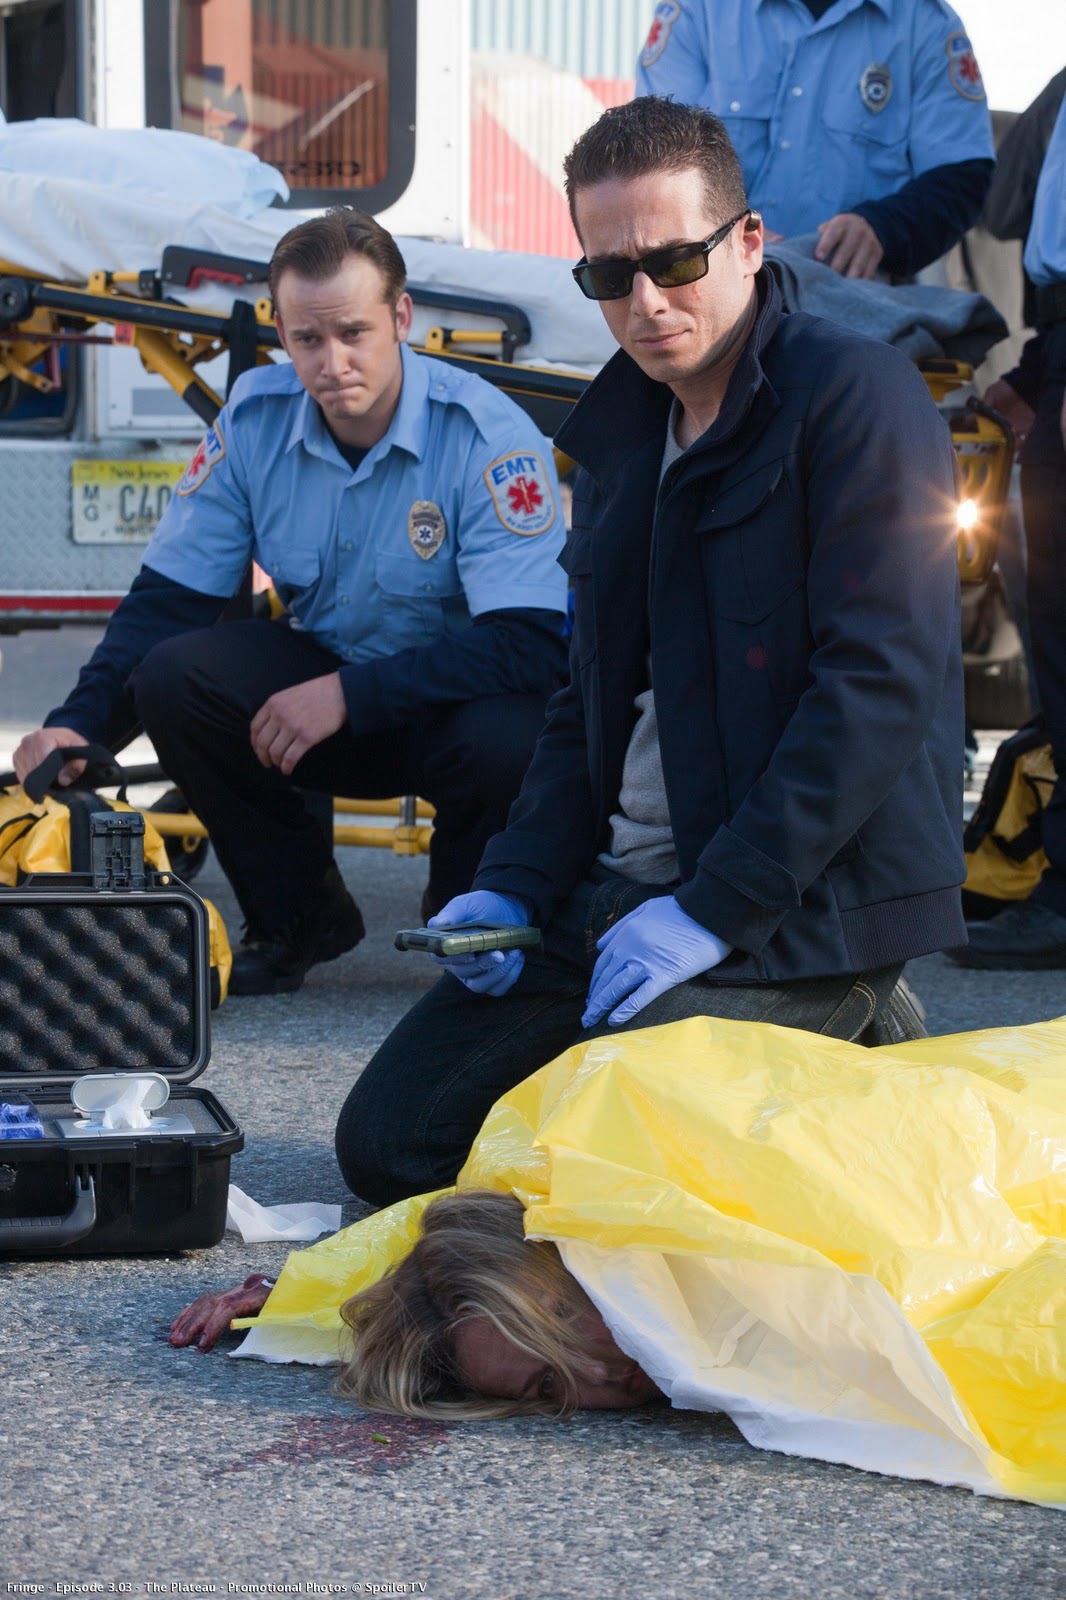 EMT in an episode of Fringe 